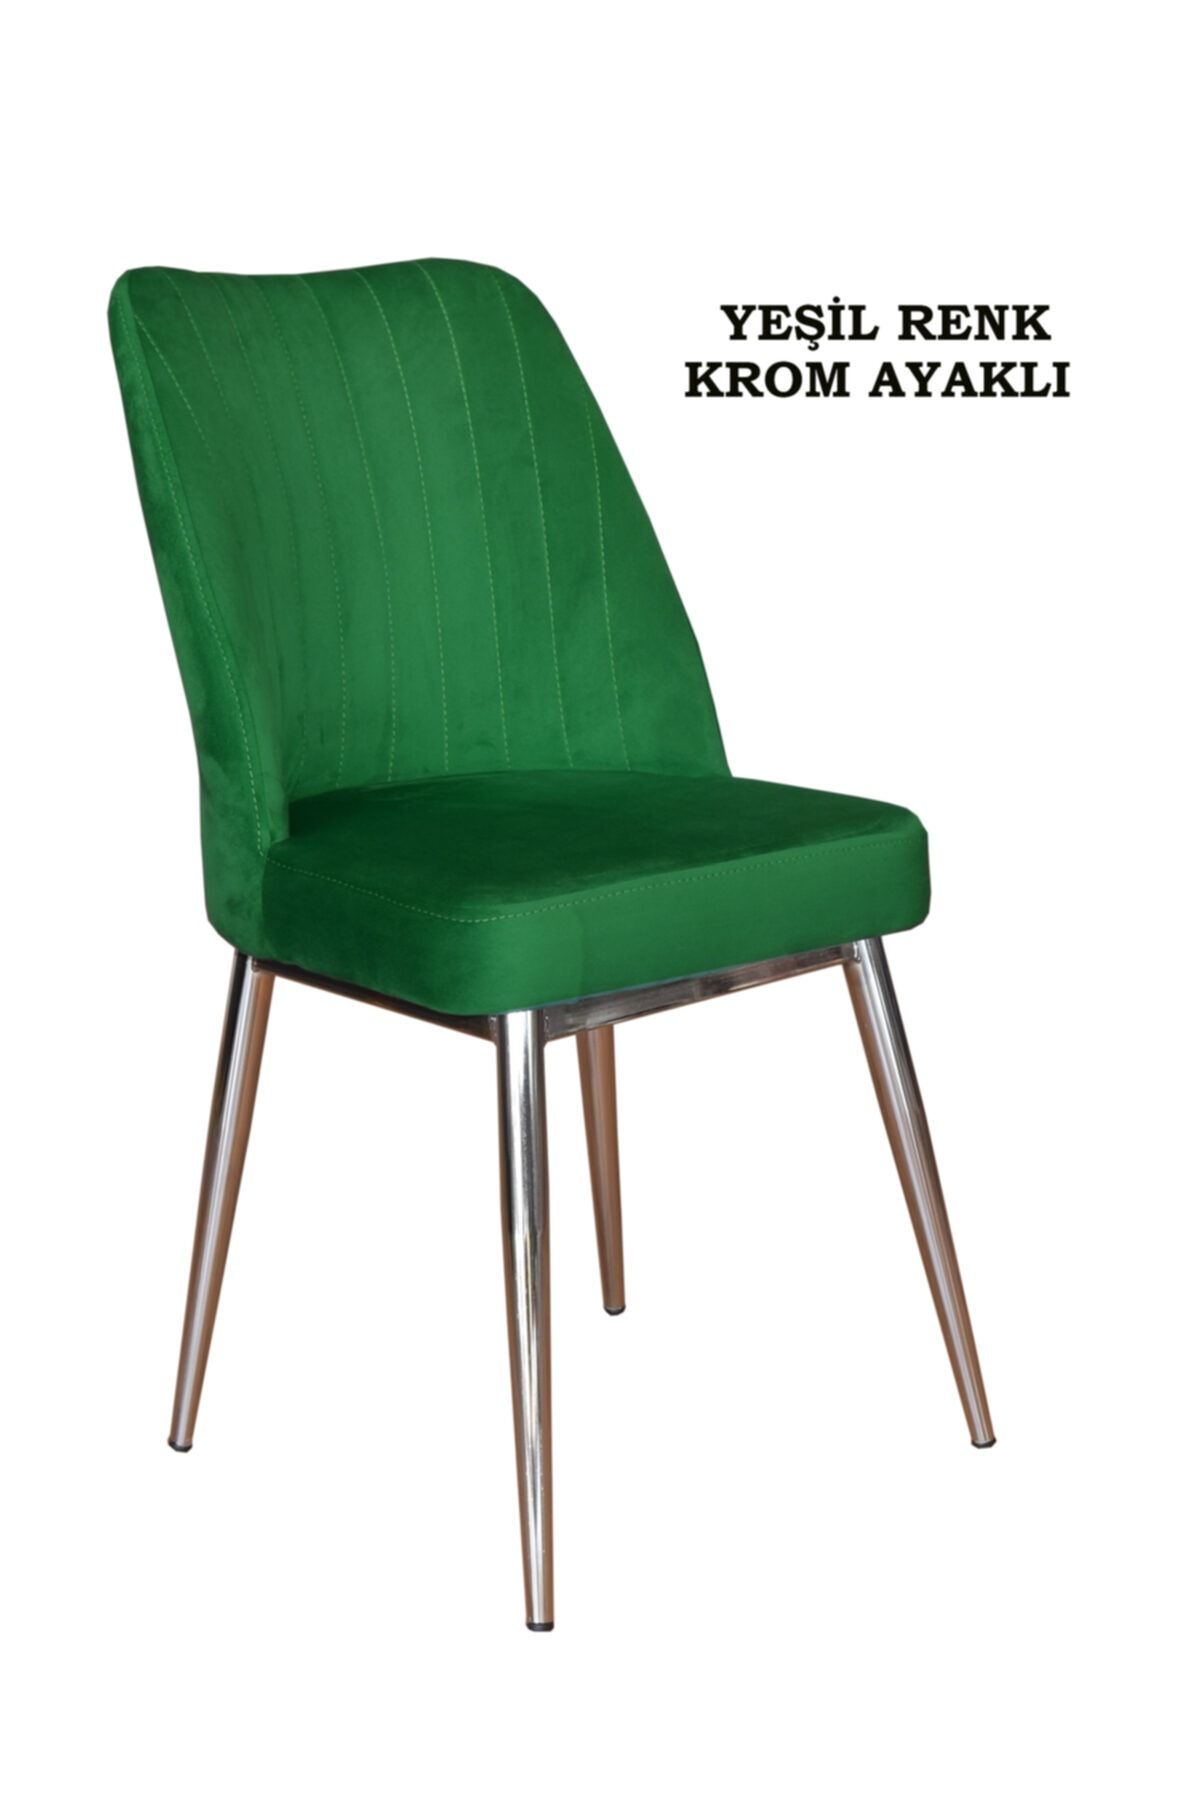 Ankhira Elit Sandalye, Mutfak Ve Salon Sandalyesi, Silinebilir Yeşil Renk Kumaş, Krom Ayaklı